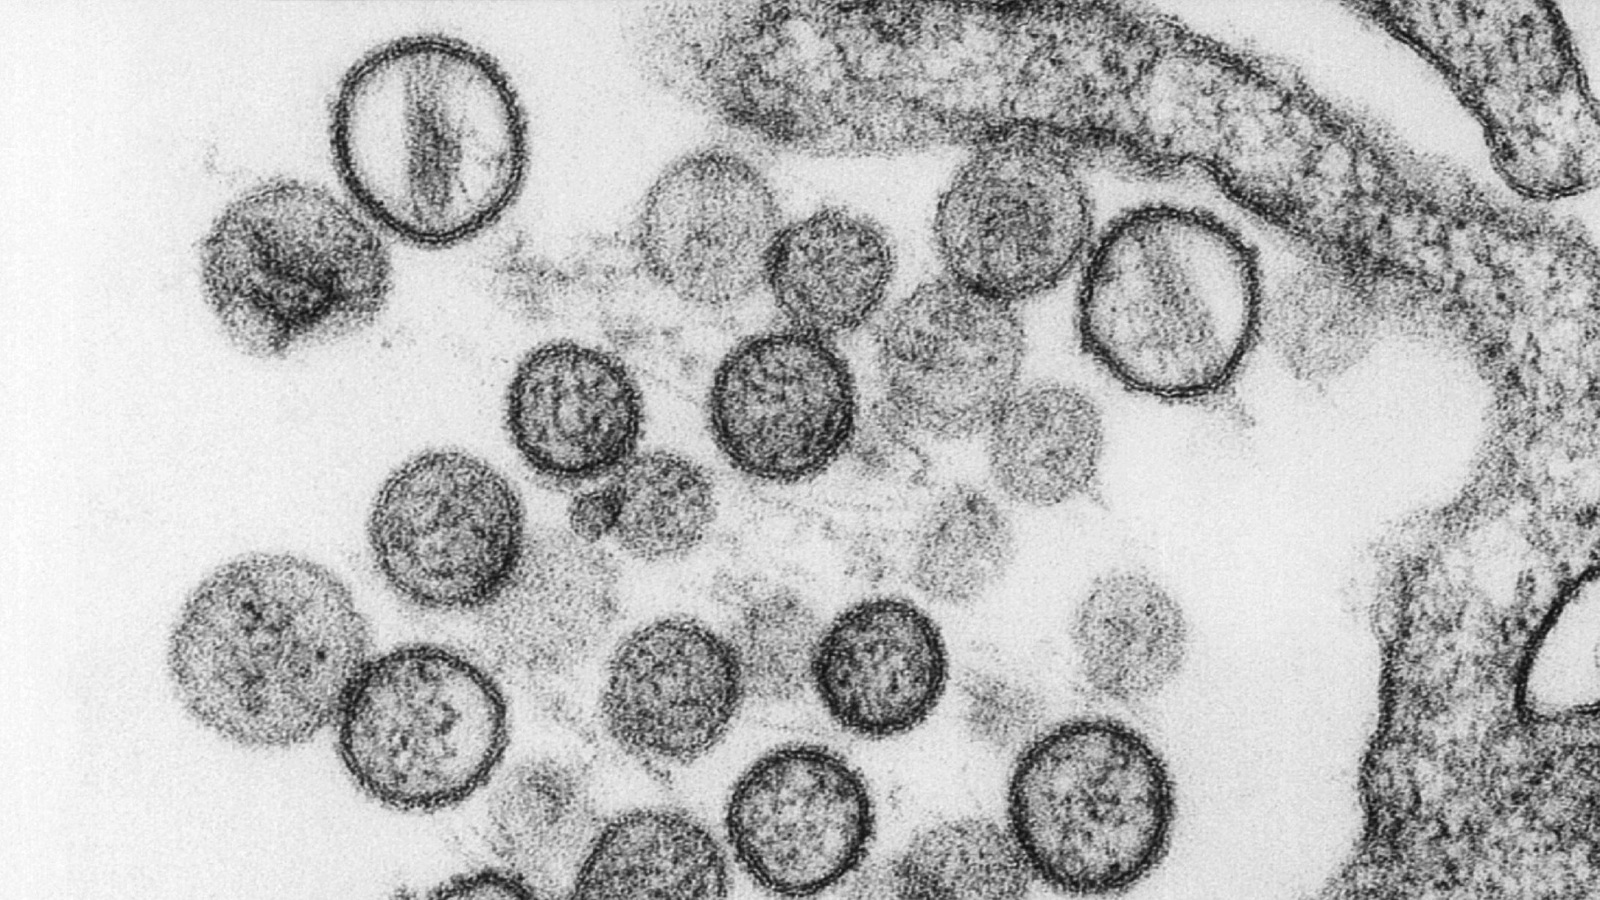 فيروسات هانتا تحت المجهر (رويترز)